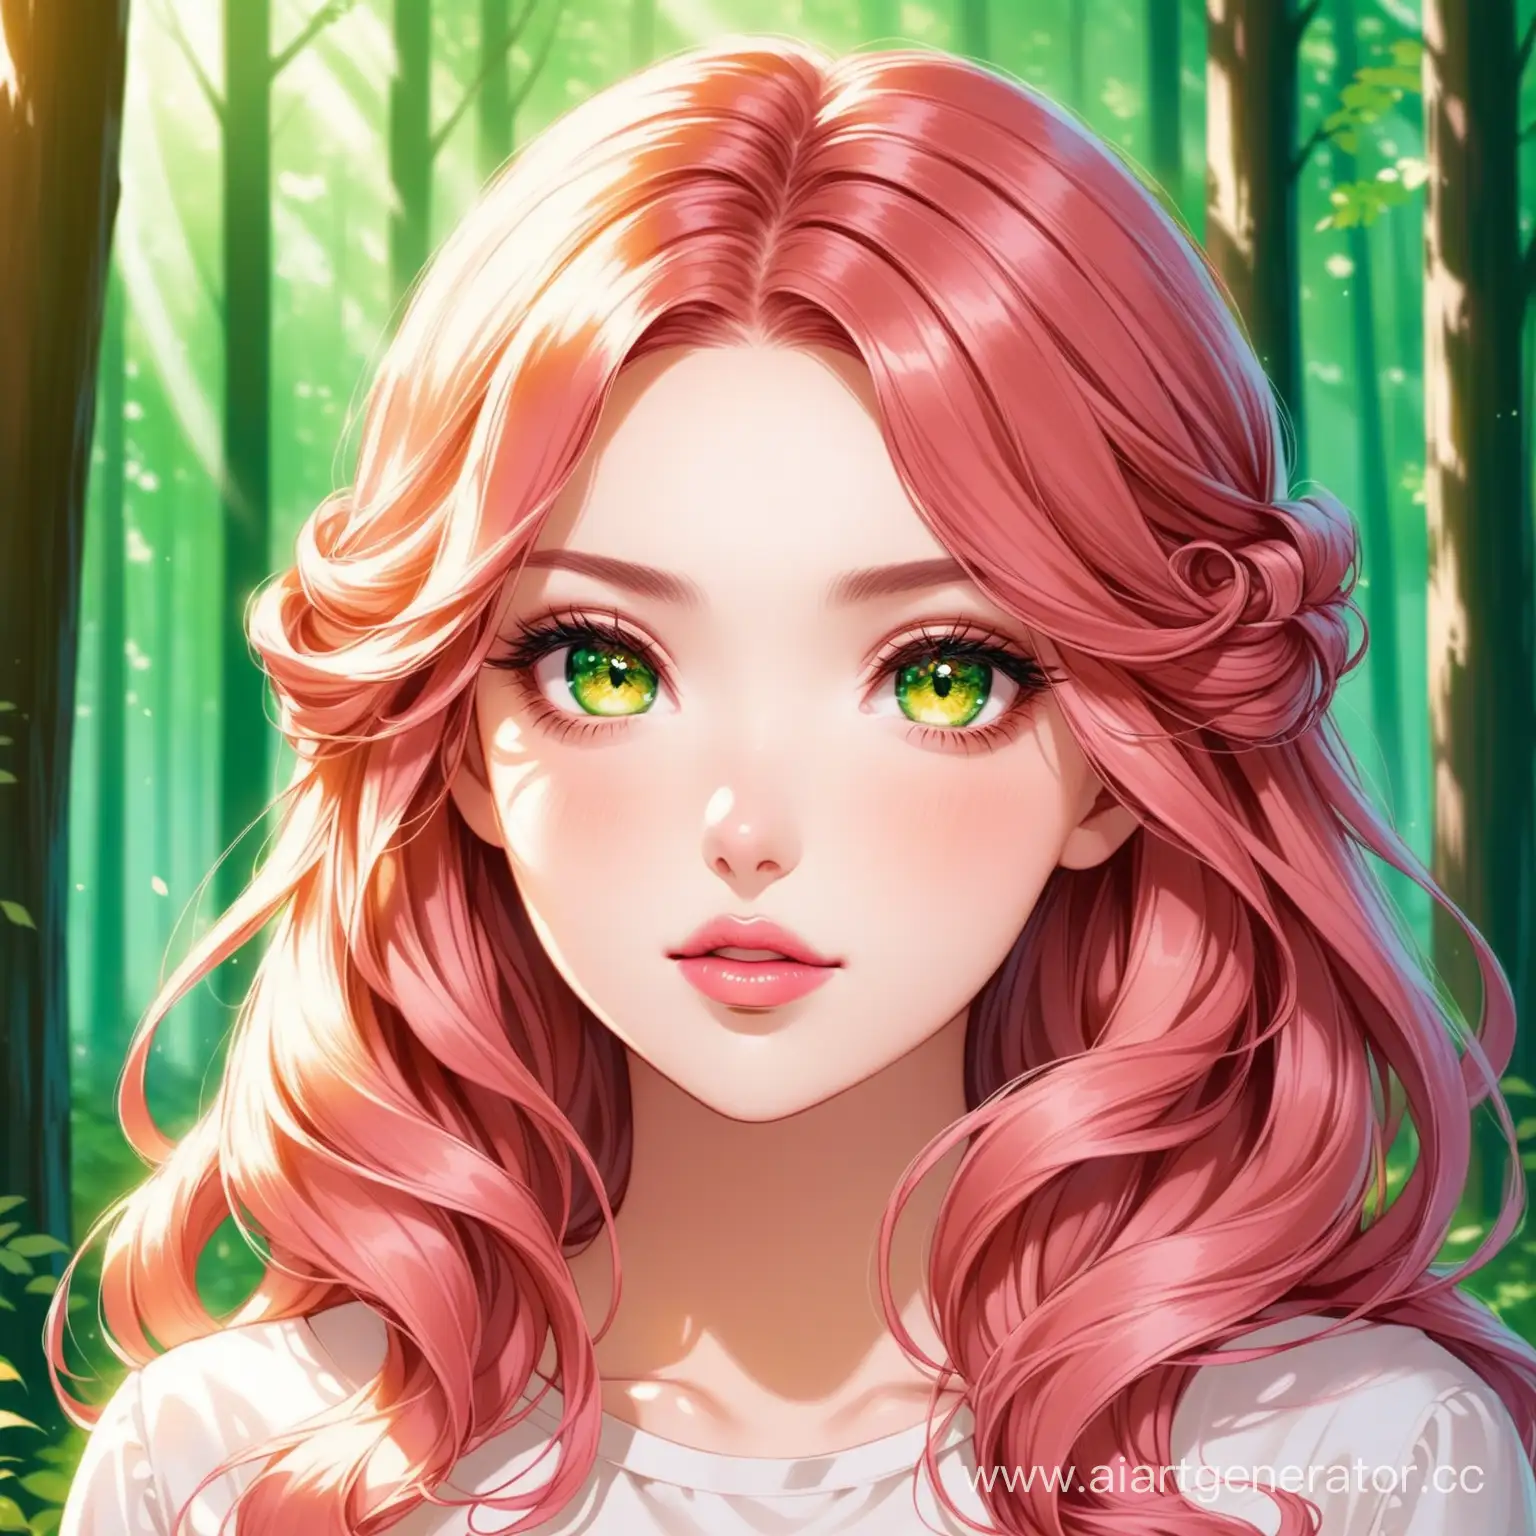 светло рыжие волосы с закрученными кончиками
янтарные глаза с оттенком зелёного
усталые глаза
розовые губы
на фоне леса